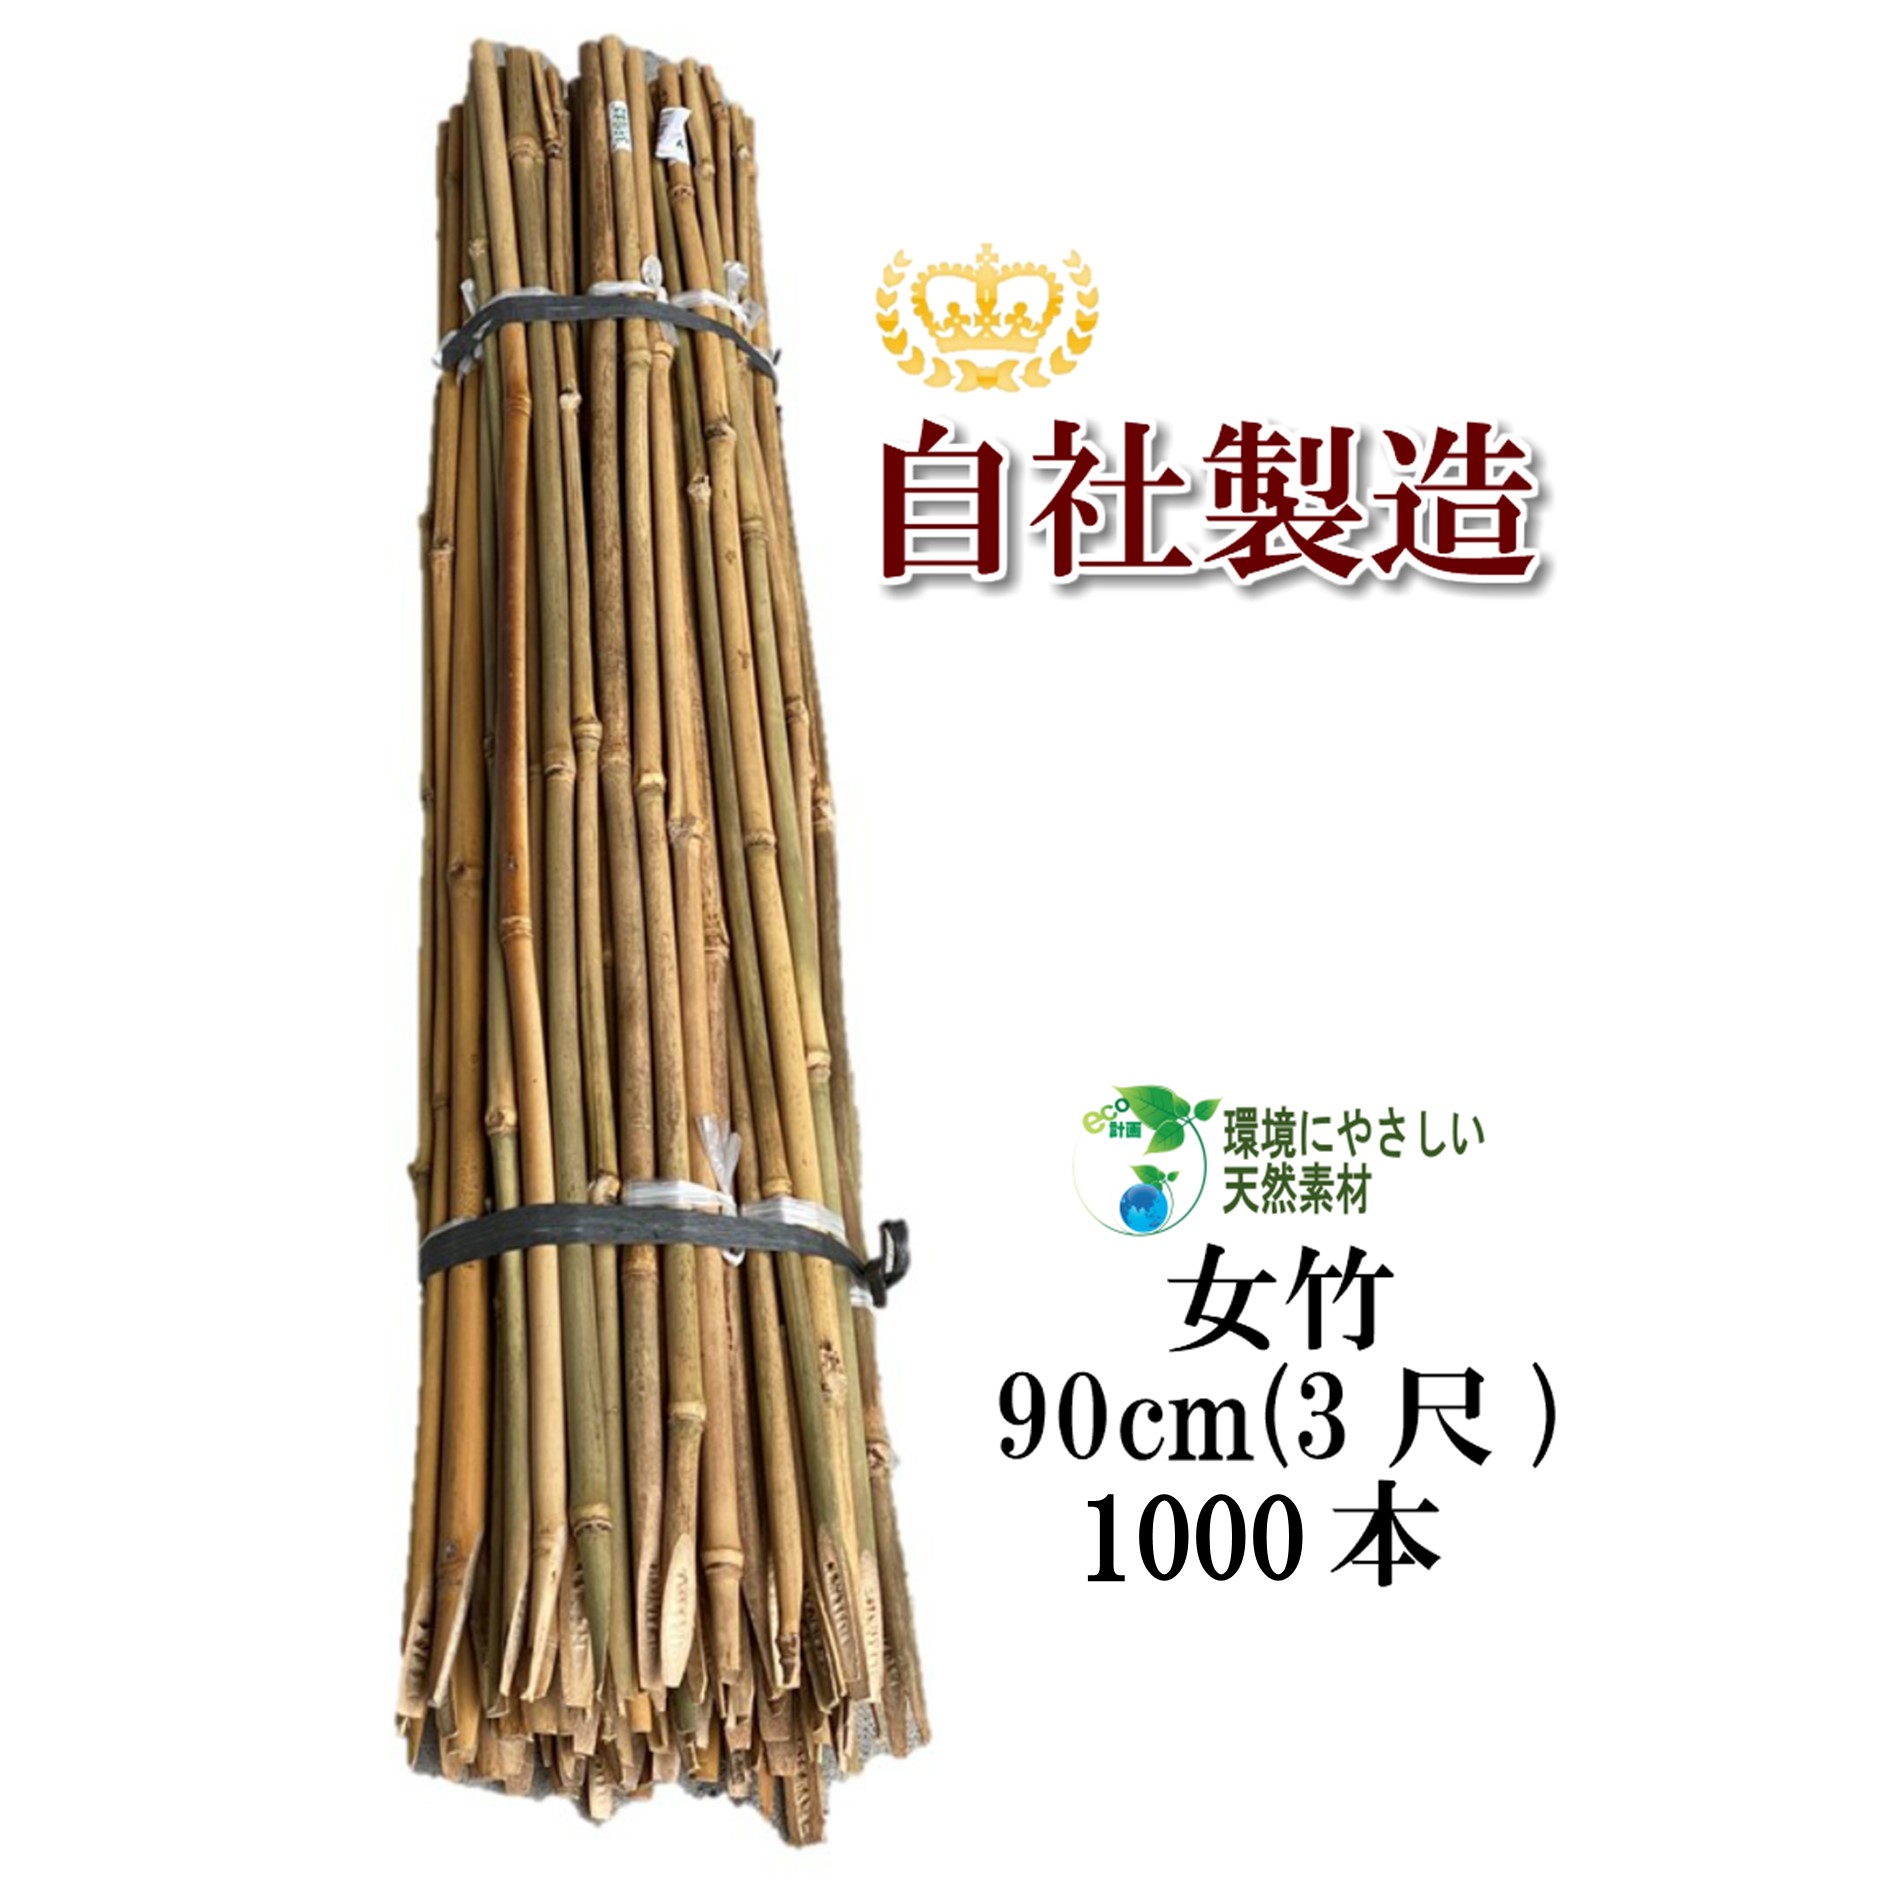 女竹 90cm 1000本 農業用、園芸用の支柱として幅広くご利用いただけます。 竹 支柱 篠竹